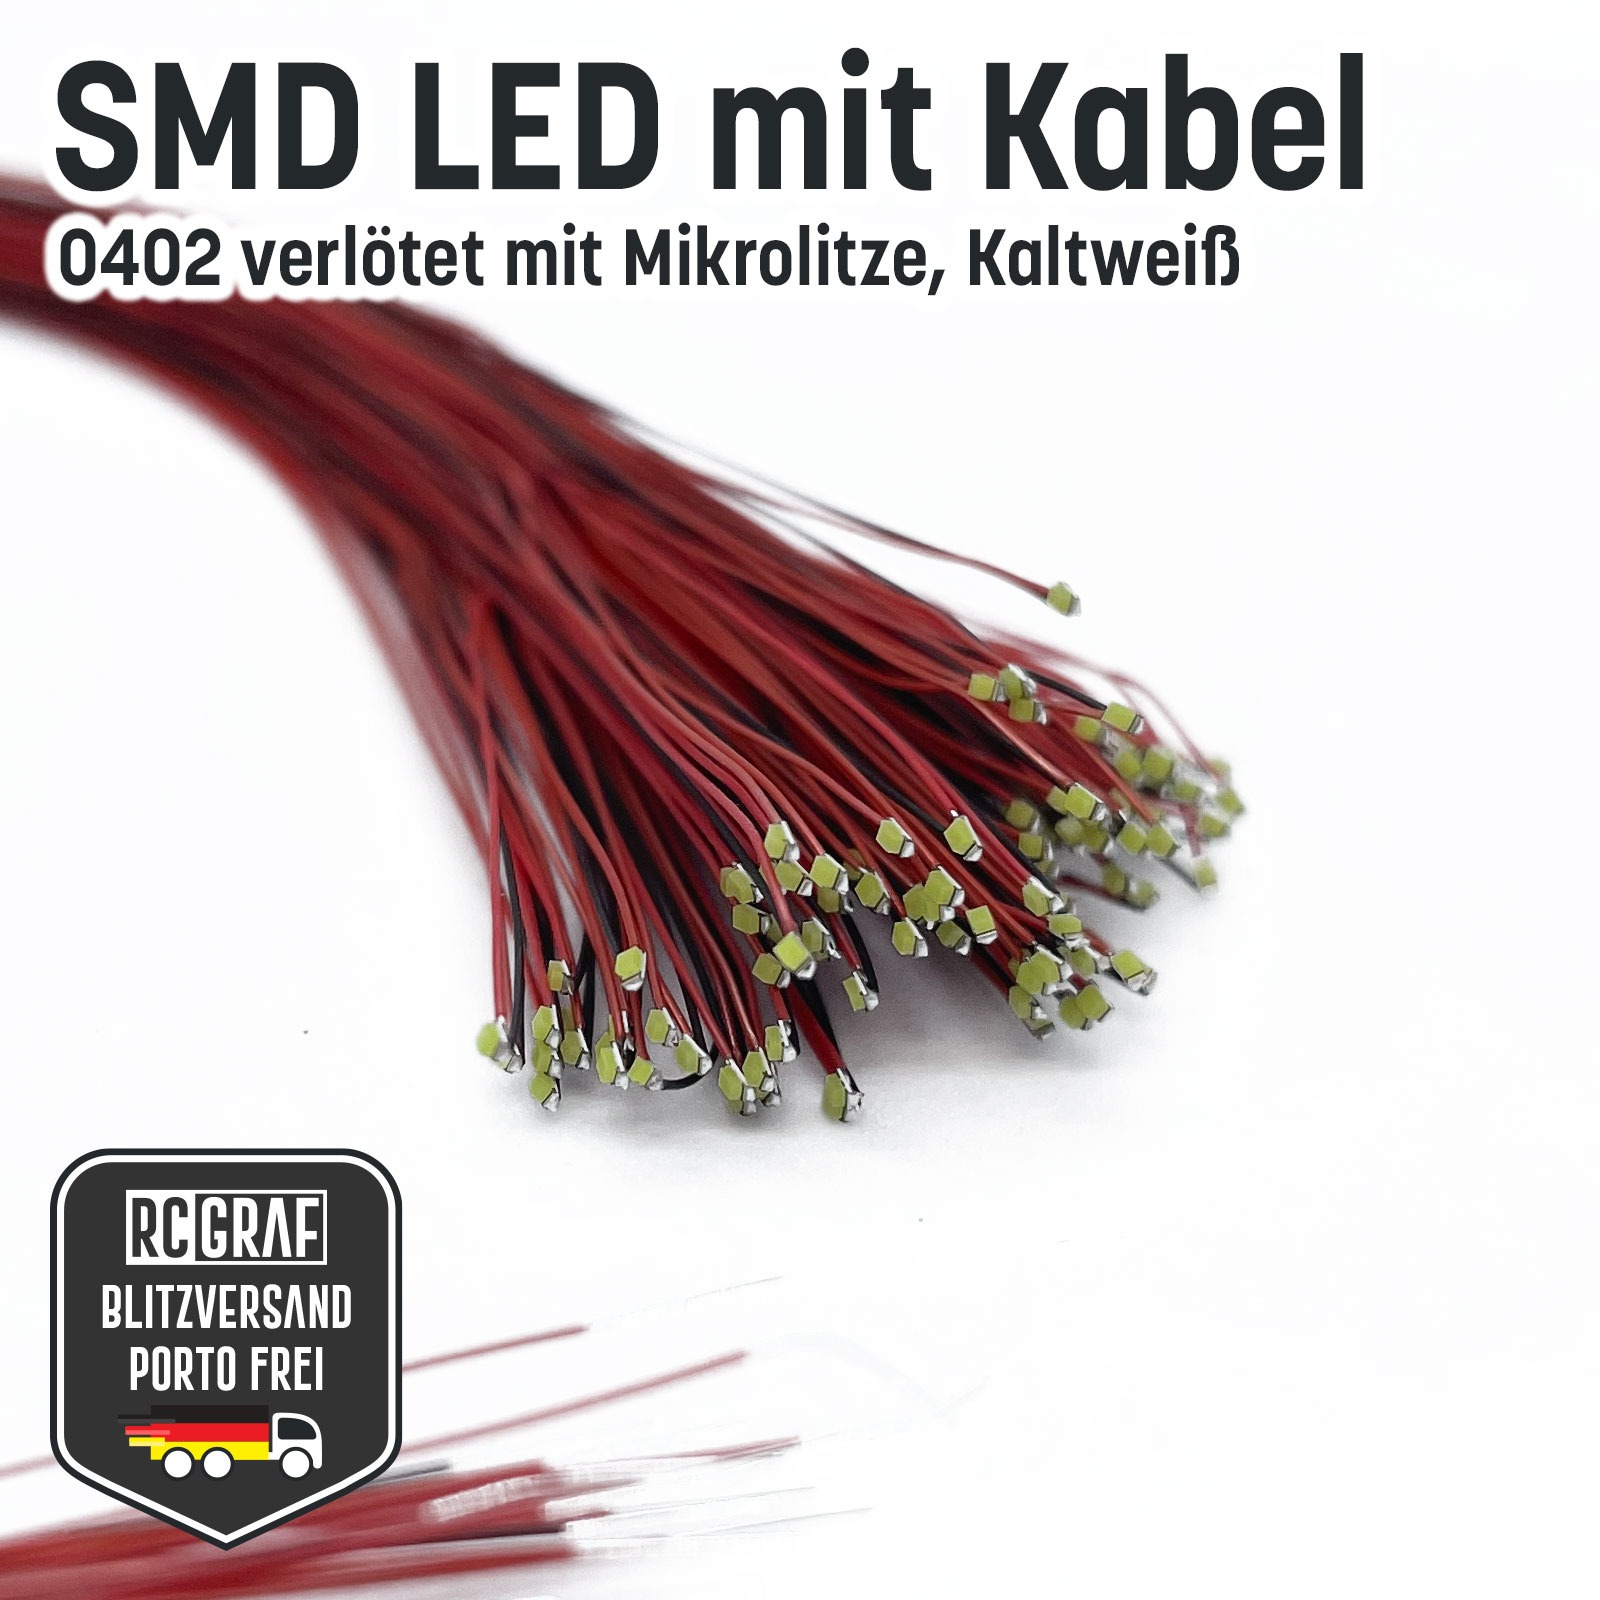 SMD LED 0402 Microlitze 30cm verlötet 7